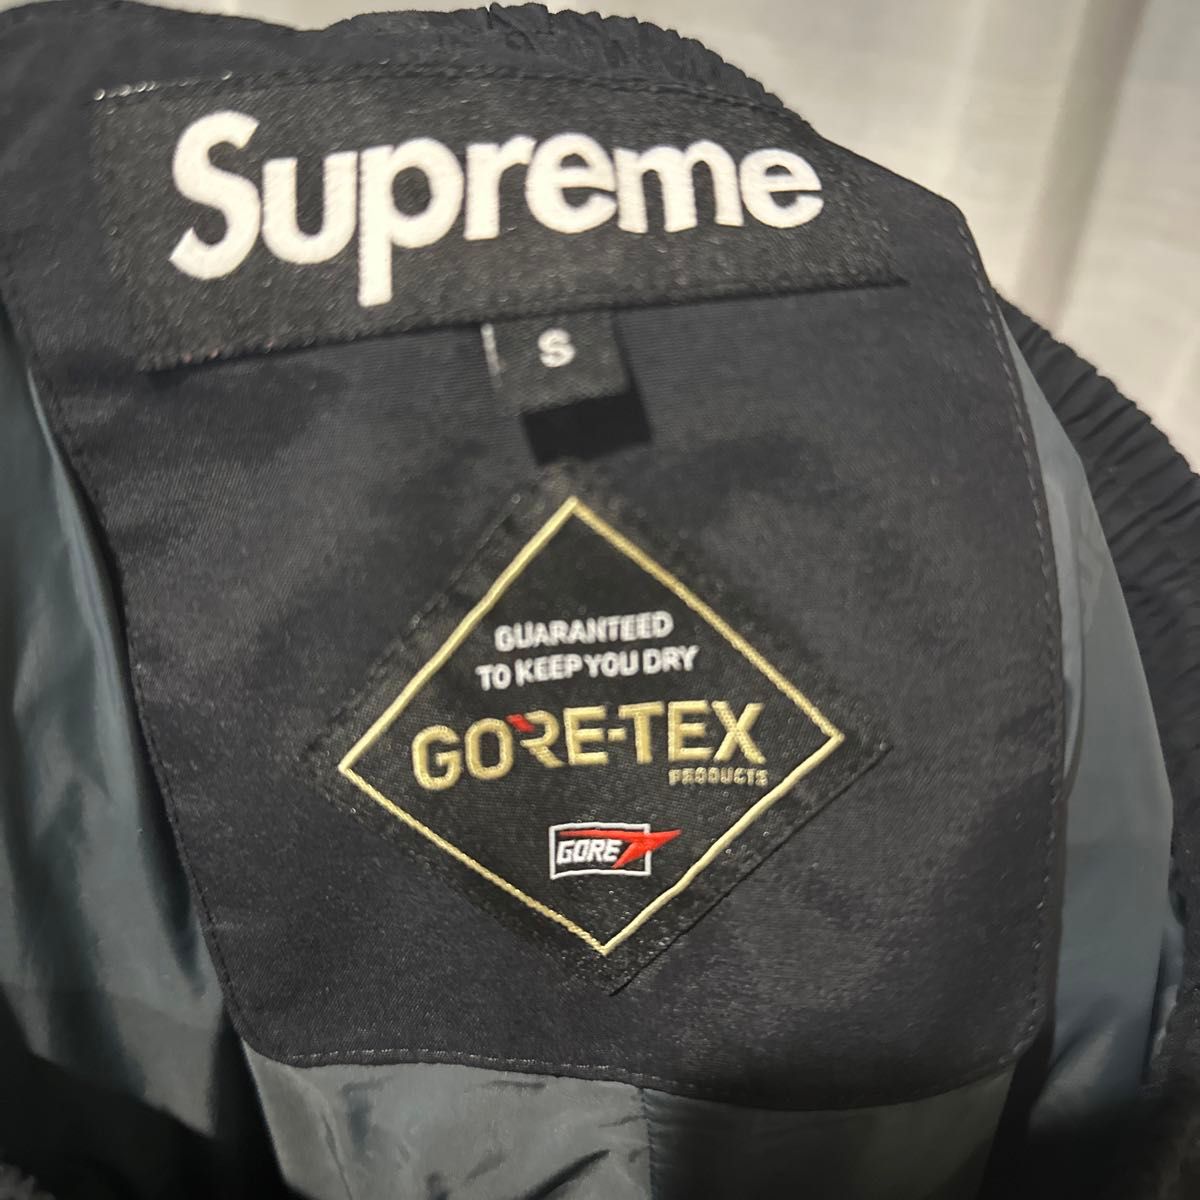 Supreme ゴアテックス gore-tex pants パンツ 19aw